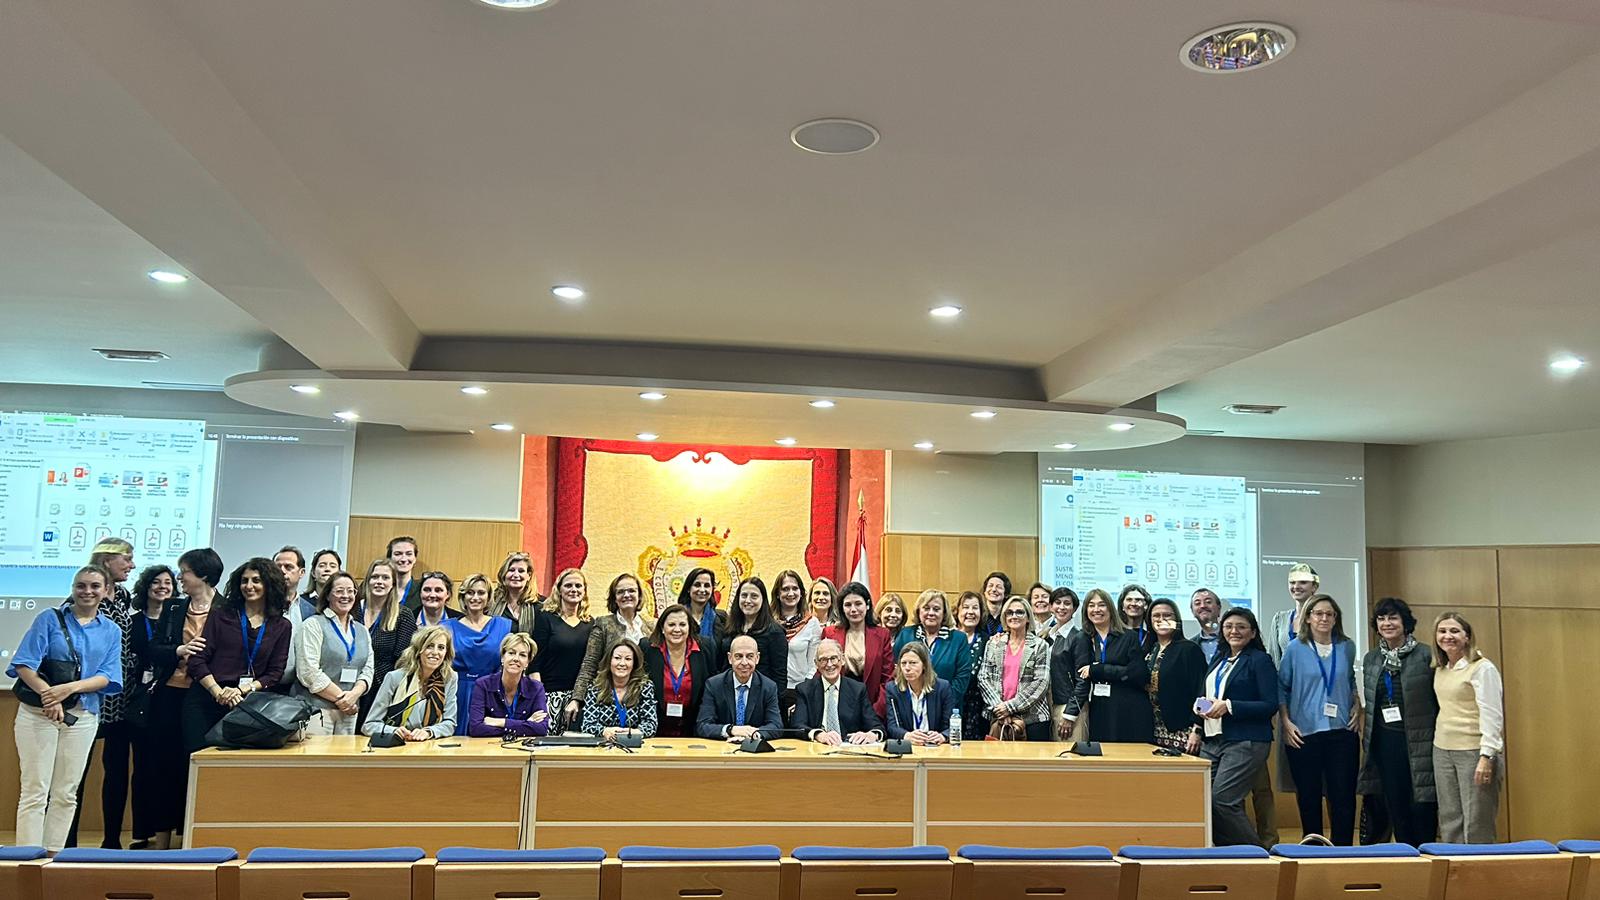 Malaga congress group photo